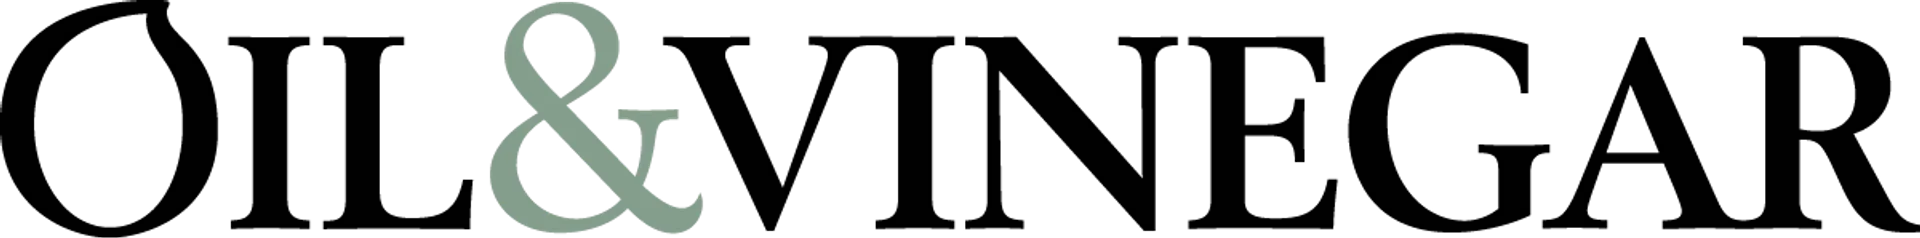 OIL & VINEGAR logo